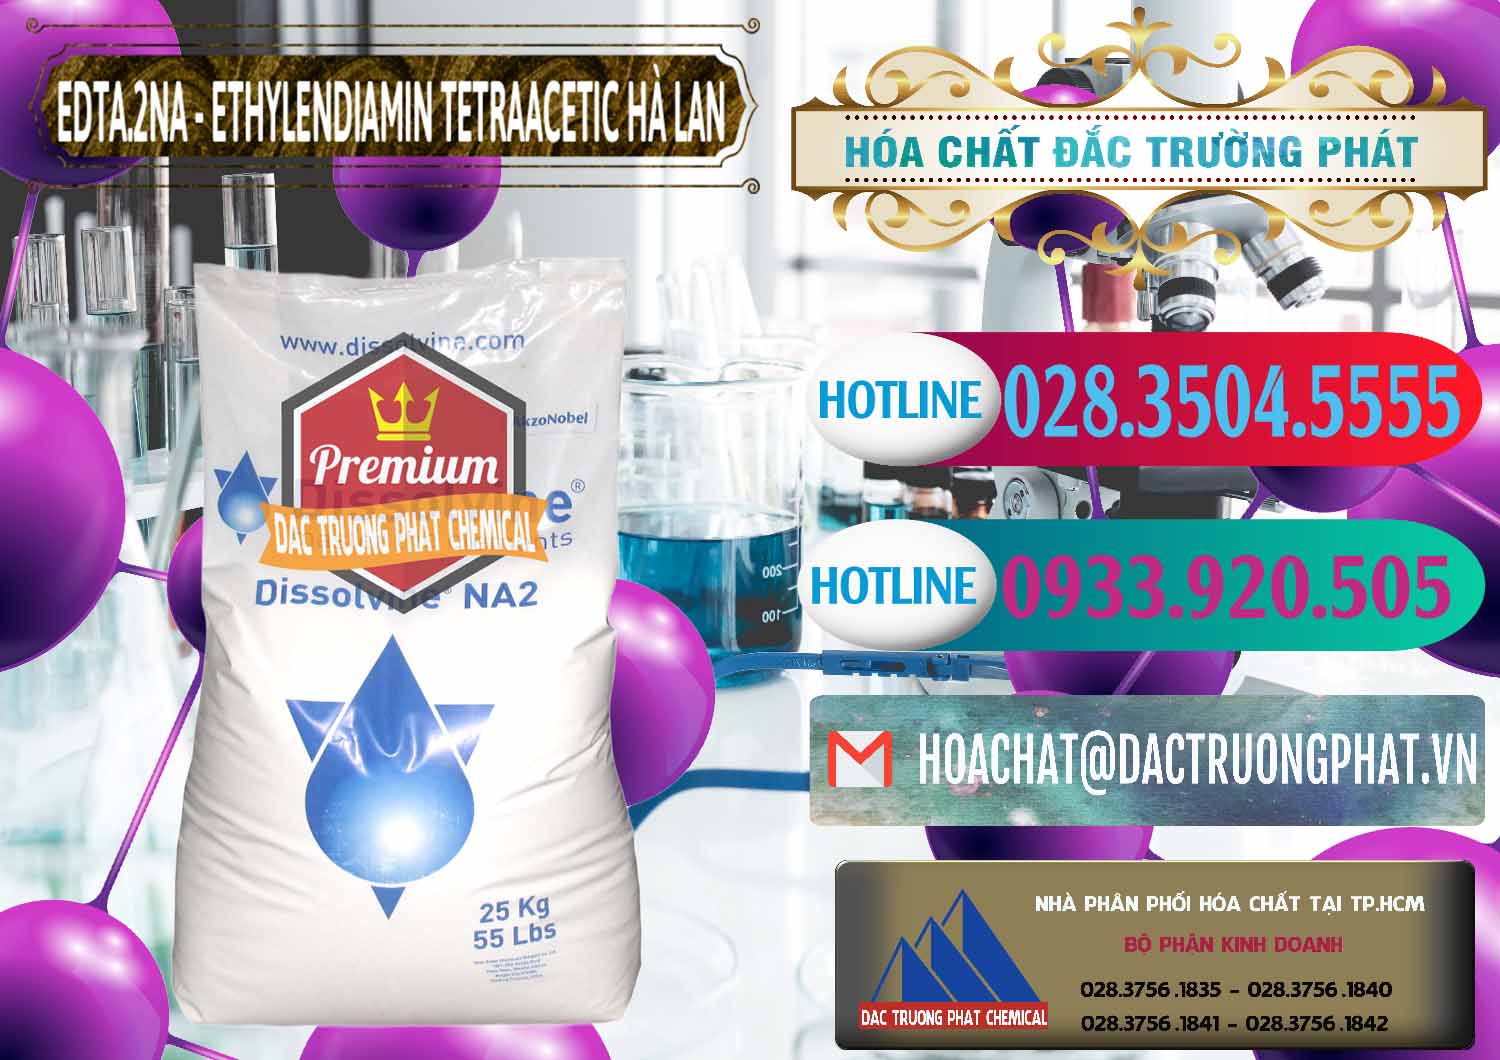 Đơn vị bán & cung ứng EDTA.2NA - Ethylendiamin Tetraacetic Dissolvine Hà Lan Netherlands - 0064 - Nơi phân phối & kinh doanh hóa chất tại TP.HCM - truongphat.vn